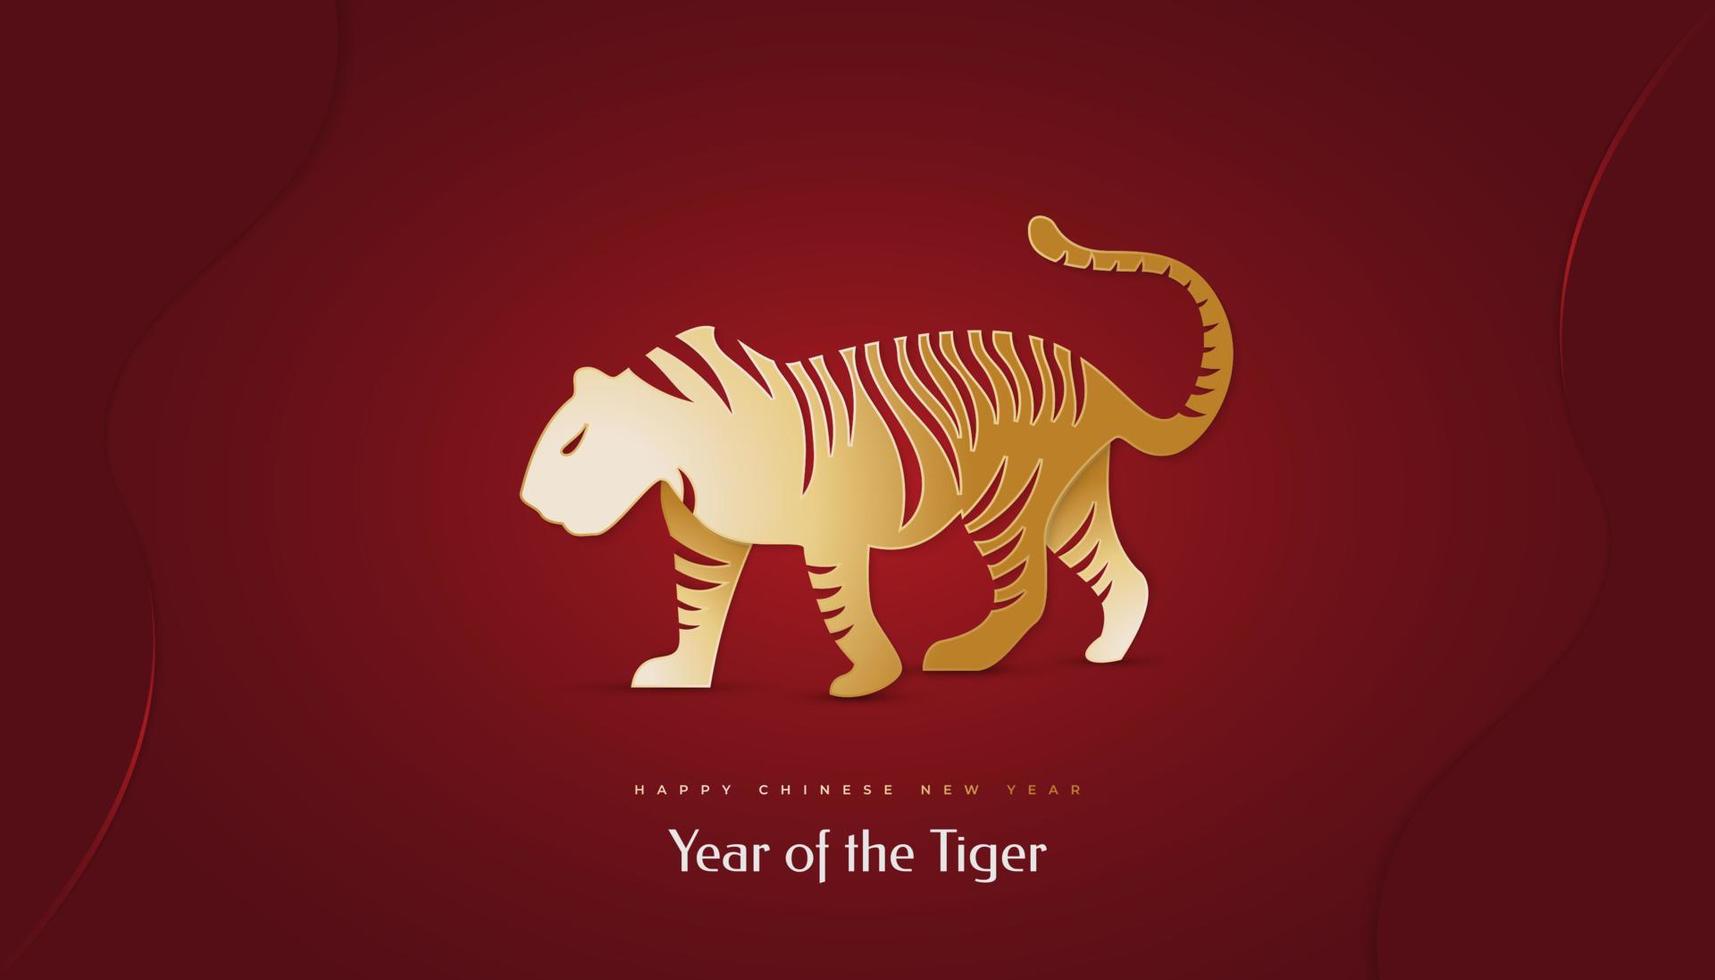 año nuevo chino 2022 año del tigre. banner de año nuevo chino con ilustración de tigre dorado aislado sobre fondo rojo. 2022 signo del zodiaco chino tigre vector